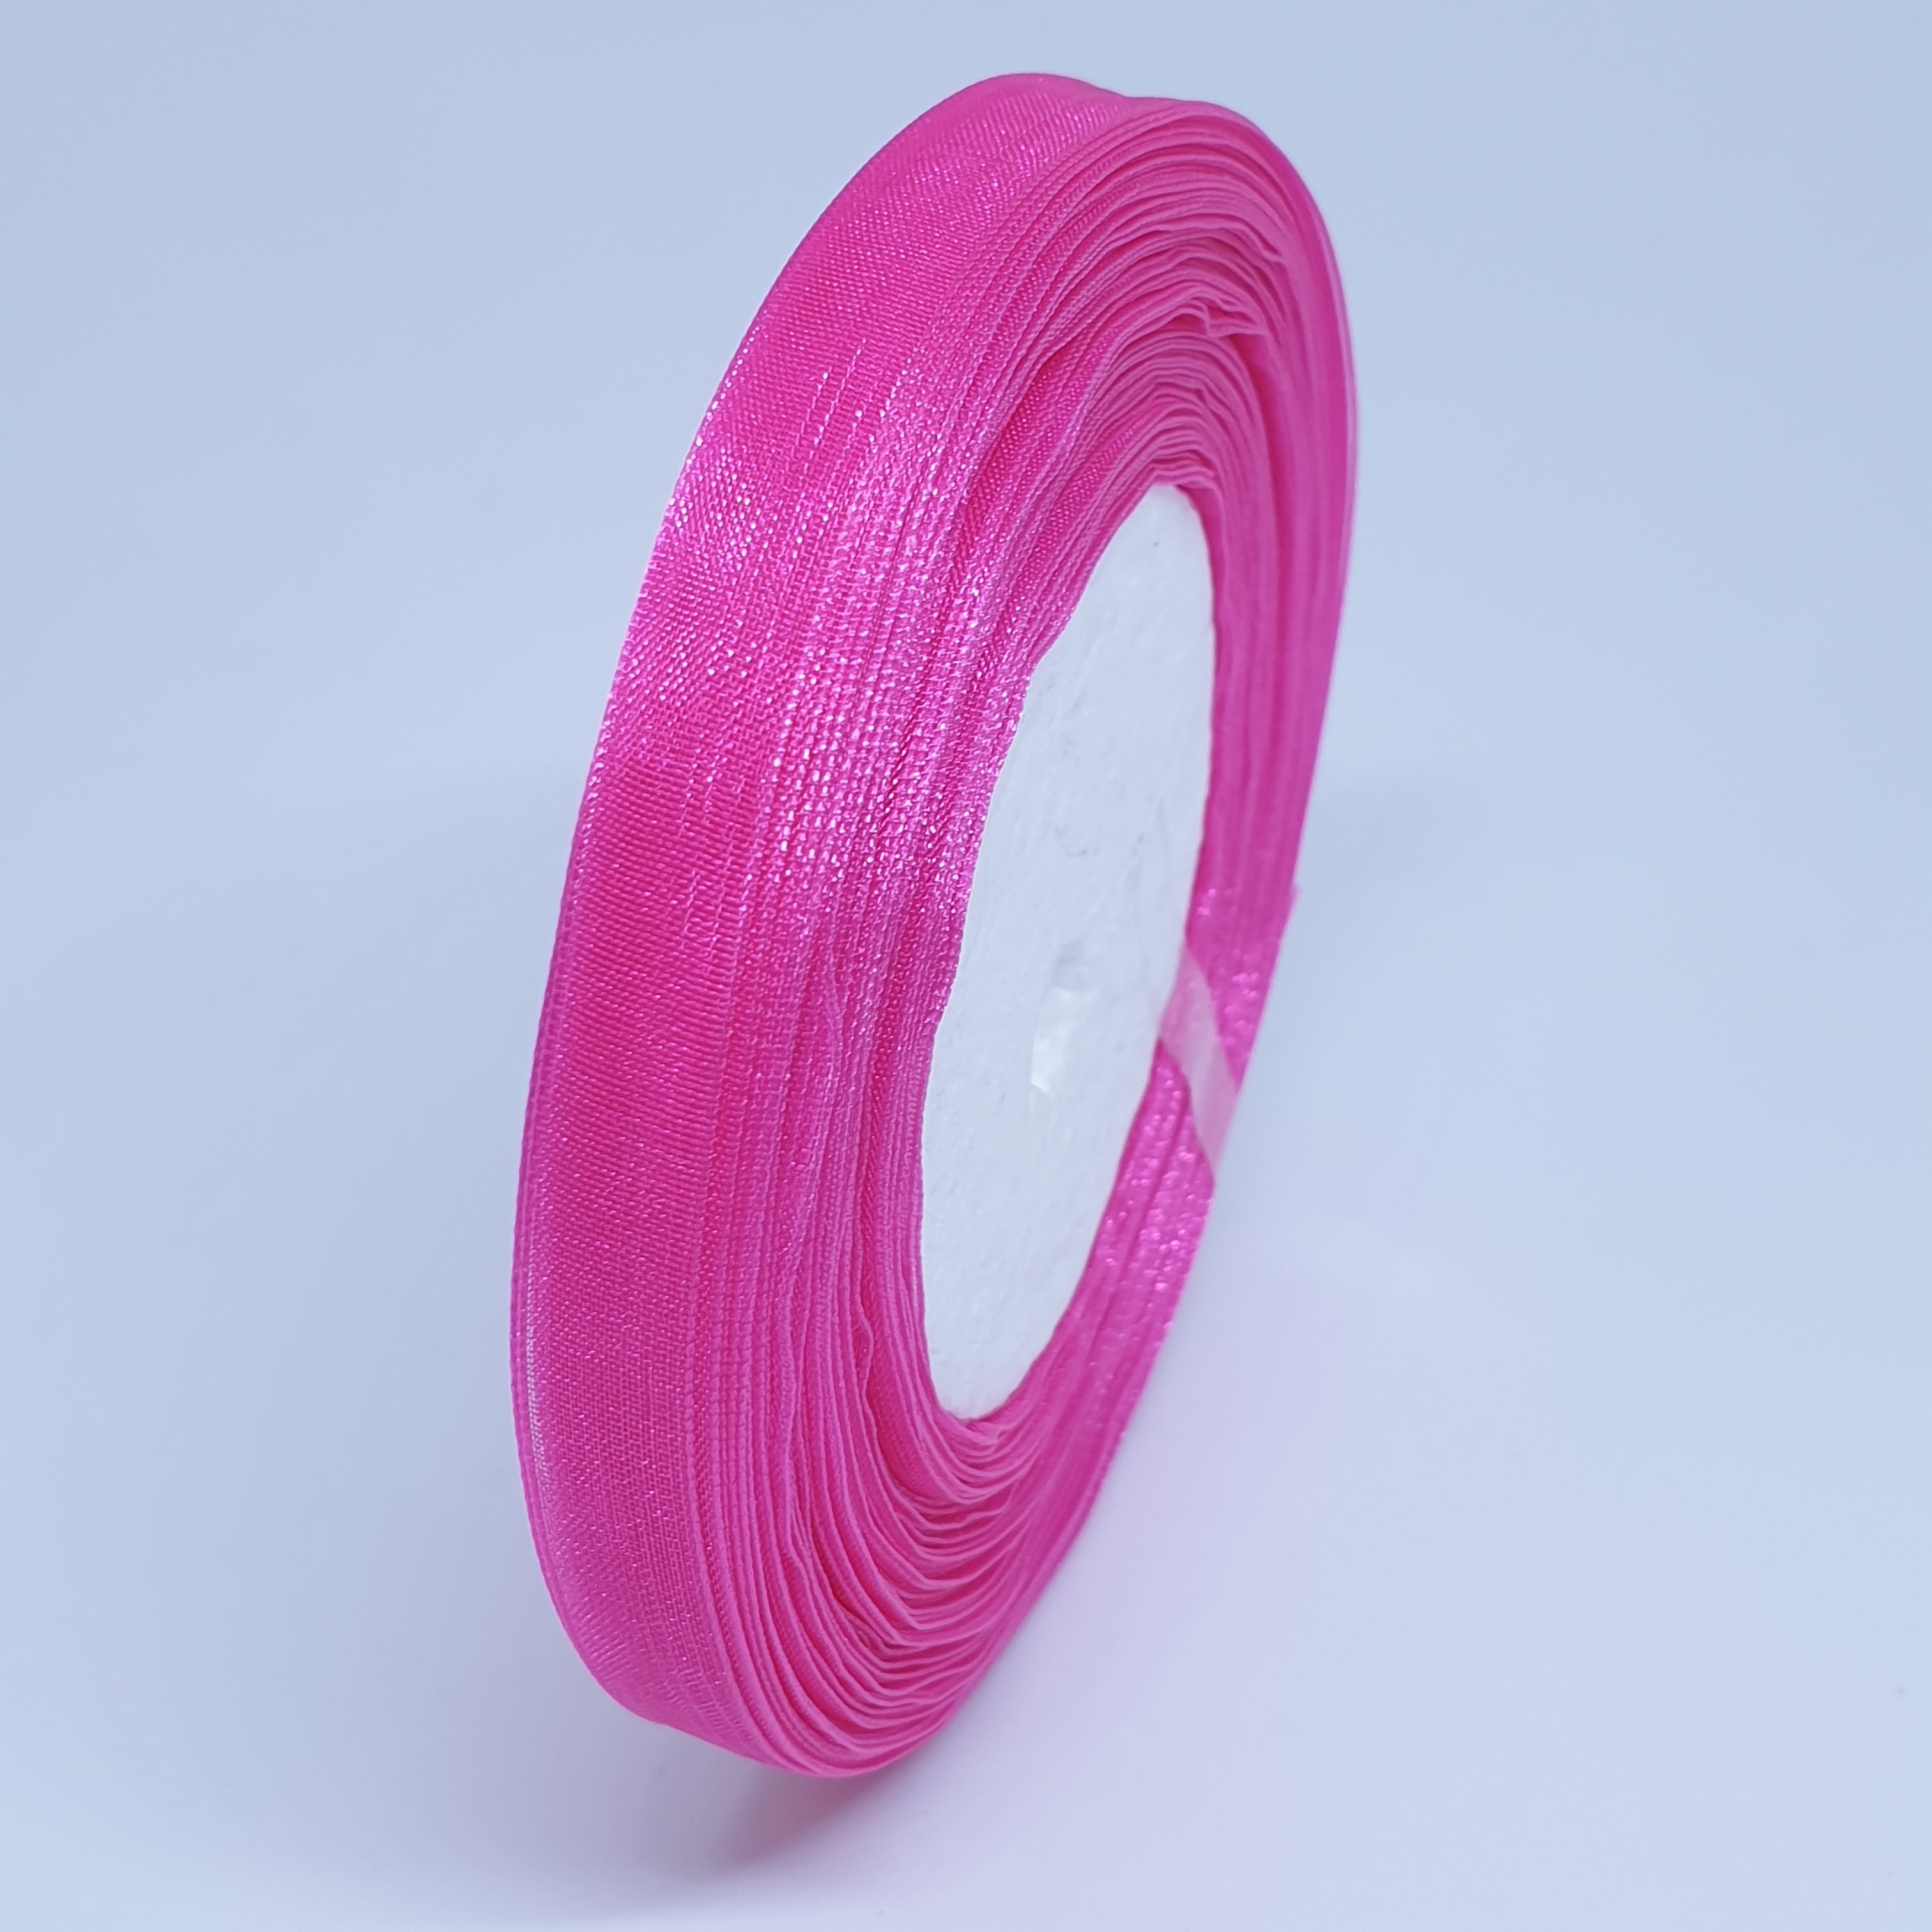 MajorCrafts 10mm 45metres Bright Pink Sheer Organza Fabric Ribbon Roll R27